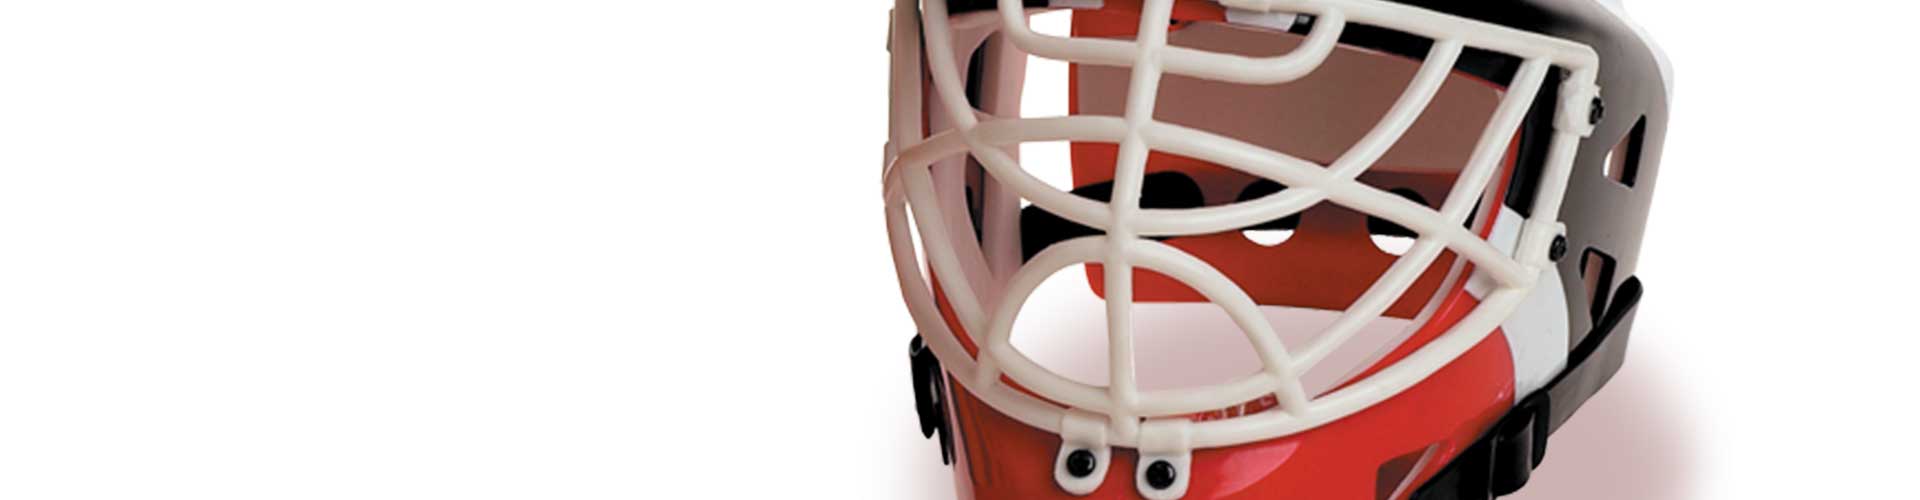 Footlocker promotion hockey helmet